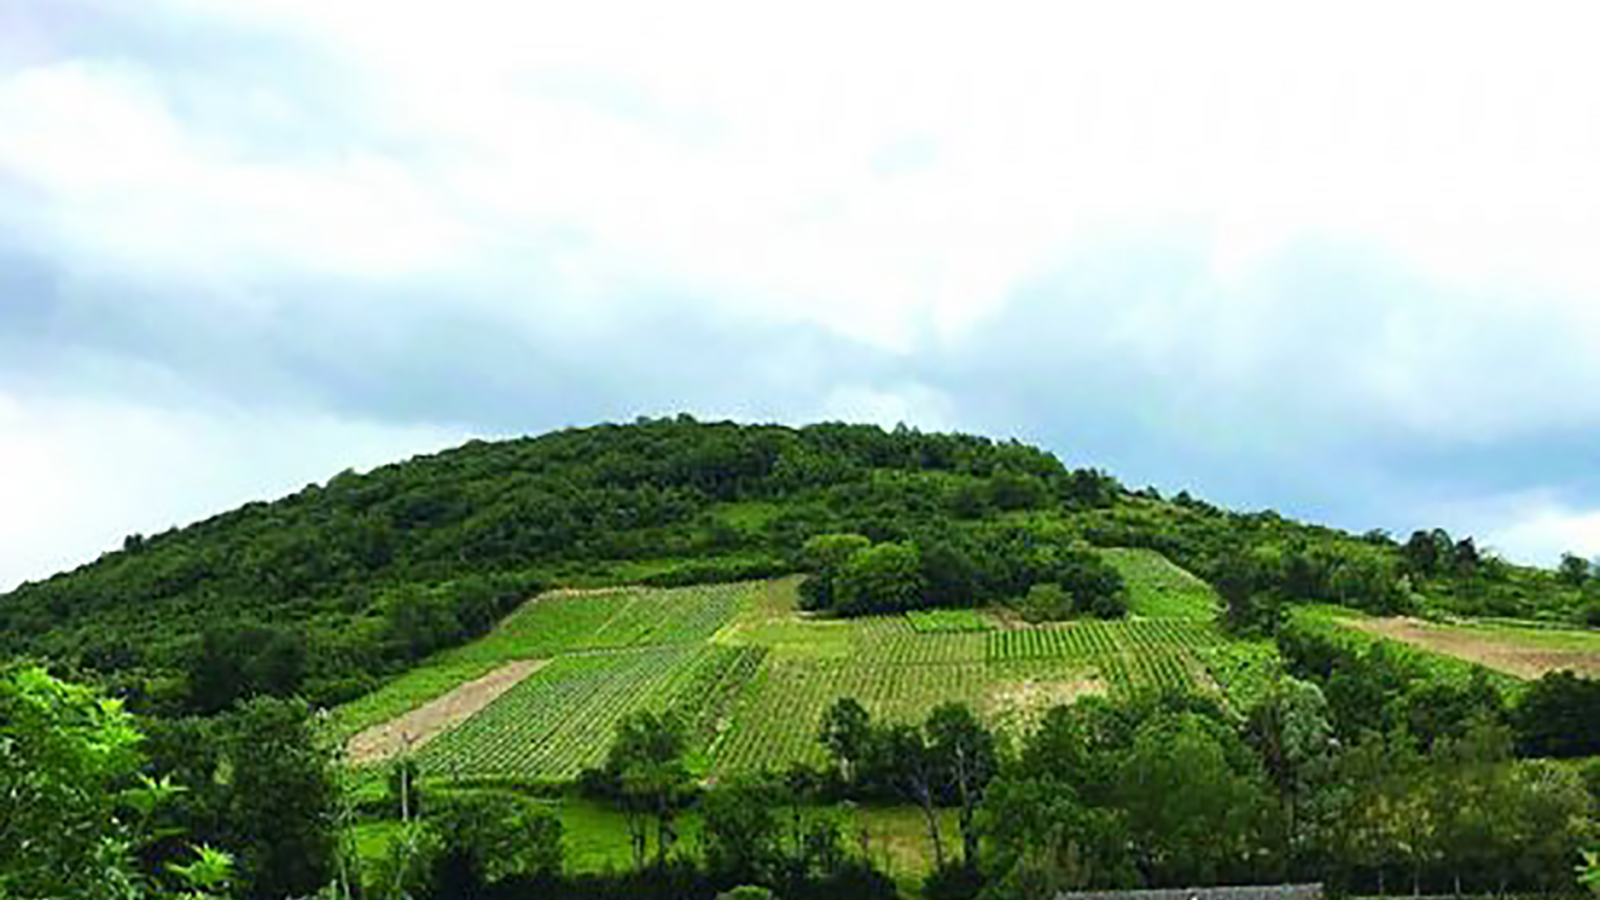 Vignoble de Gravelles, Saint Martin du Mont, Revermont